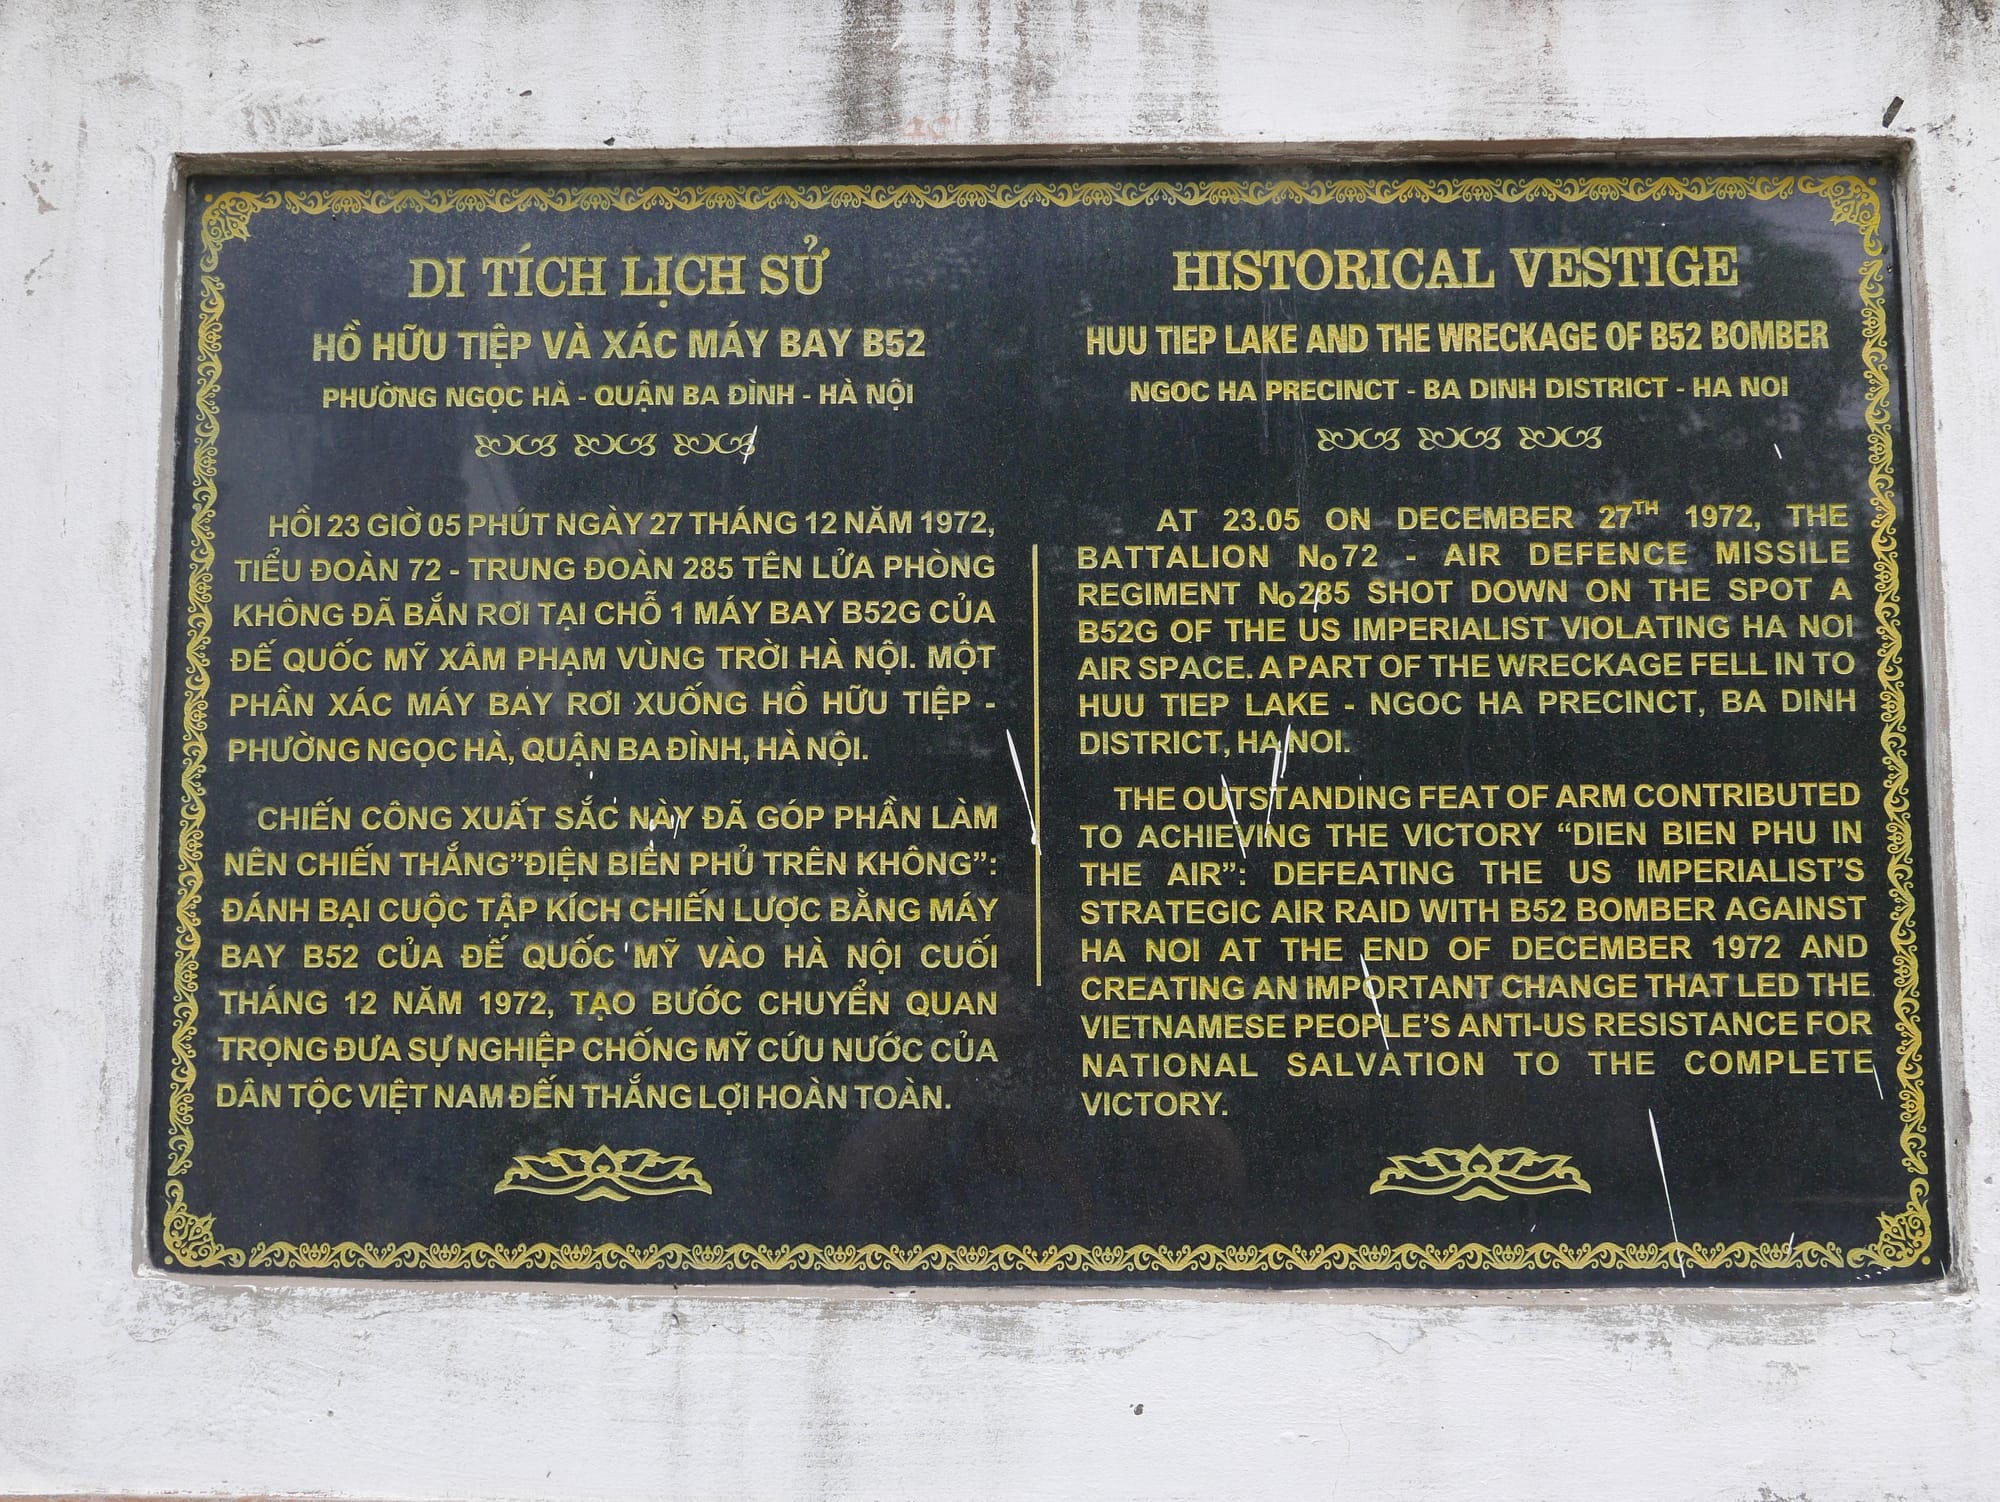 Photo by Author — plaque at Hồ Hữu Tiệp (B-52 Lake), ngõ 55 Hoàng Hoa Thám, Quận Ba Đình, Thành Phố Hà Nội, Hanoi, Vietnam